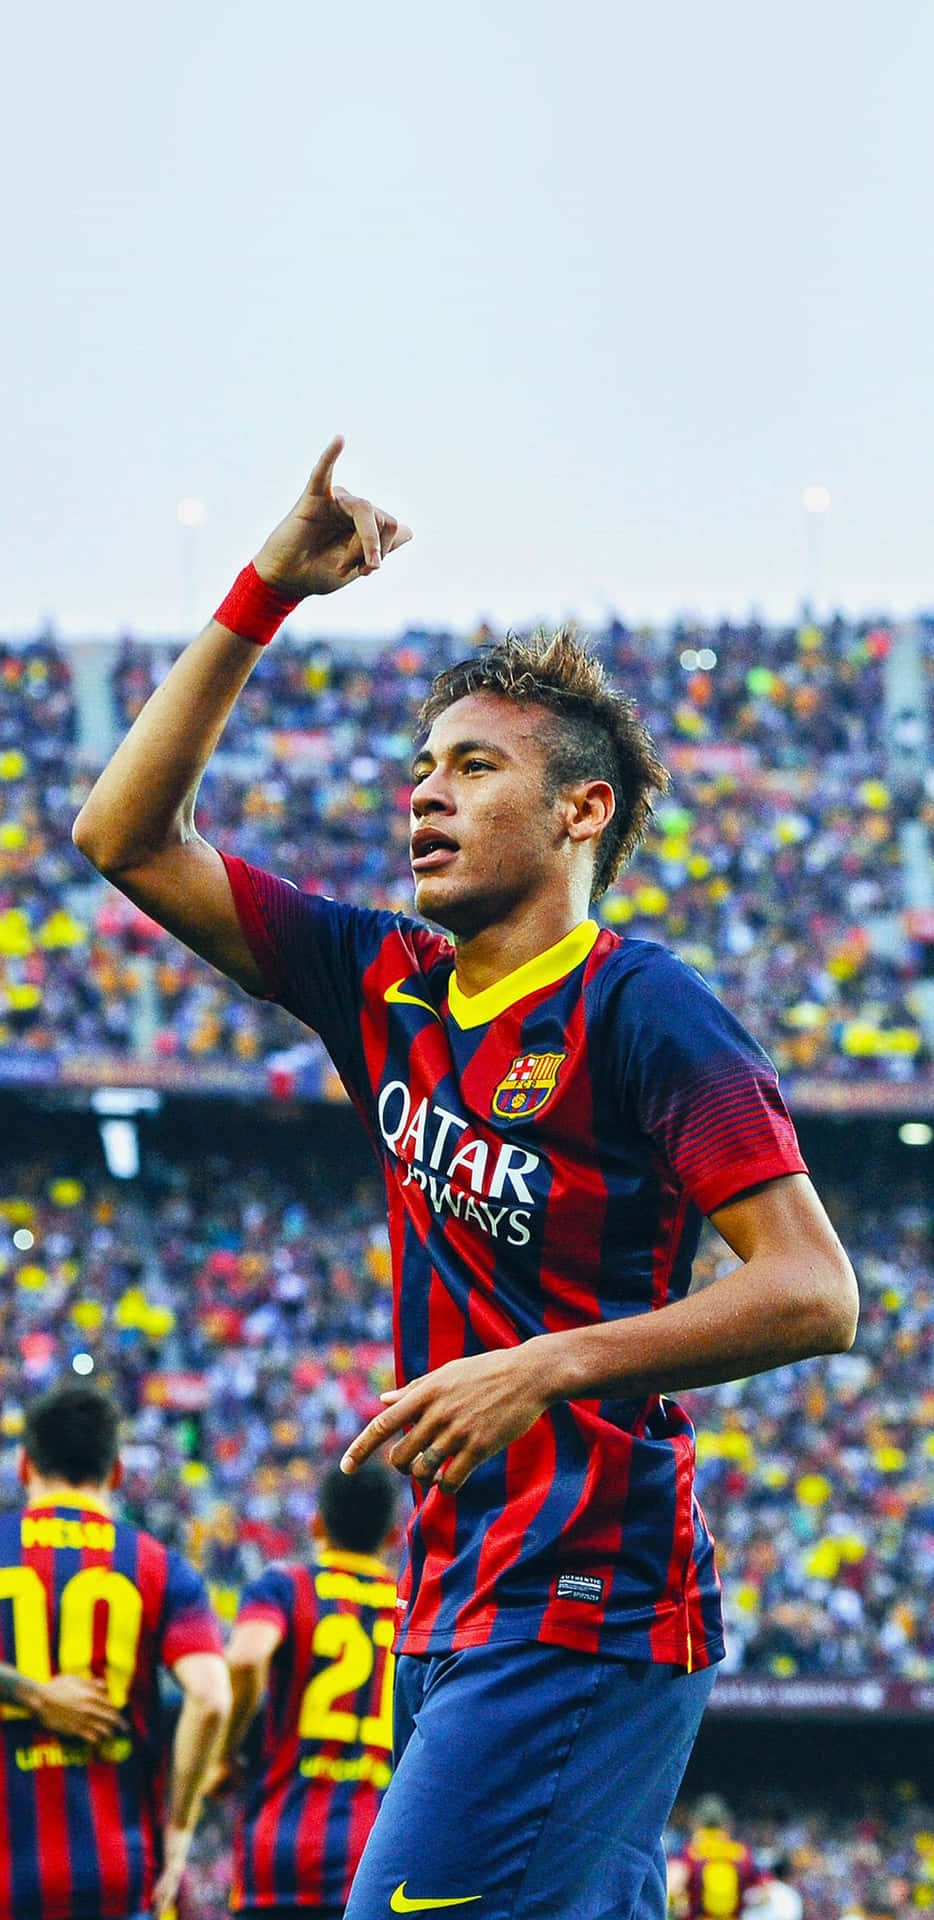 Fondode Pantalla De Fútbol Del Jugador Brasileño Neymar En El Equipo Football Galaxy. Fondo de pantalla